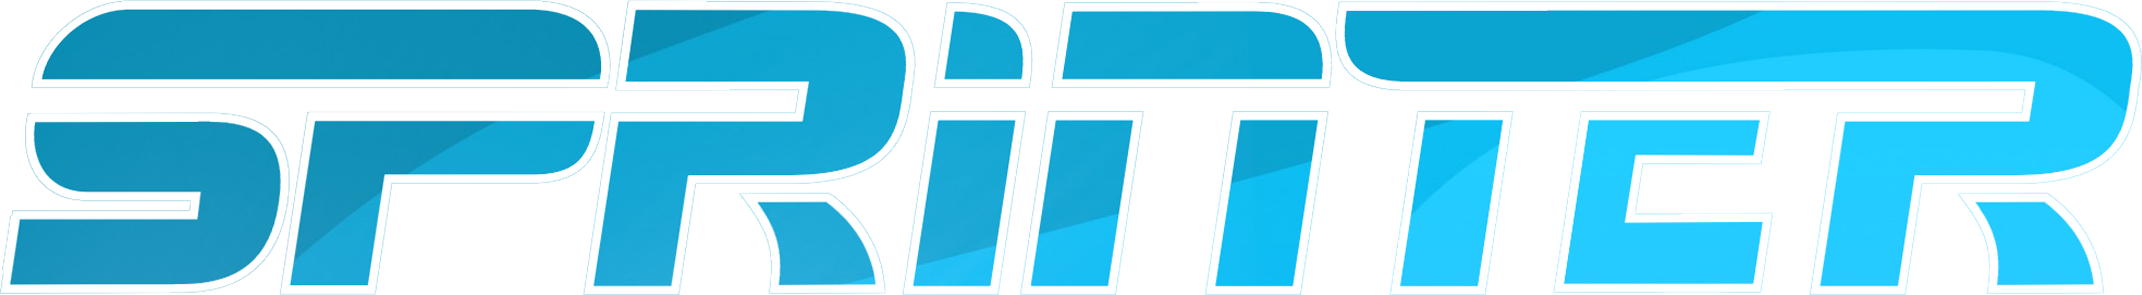 Логотип Sprinter